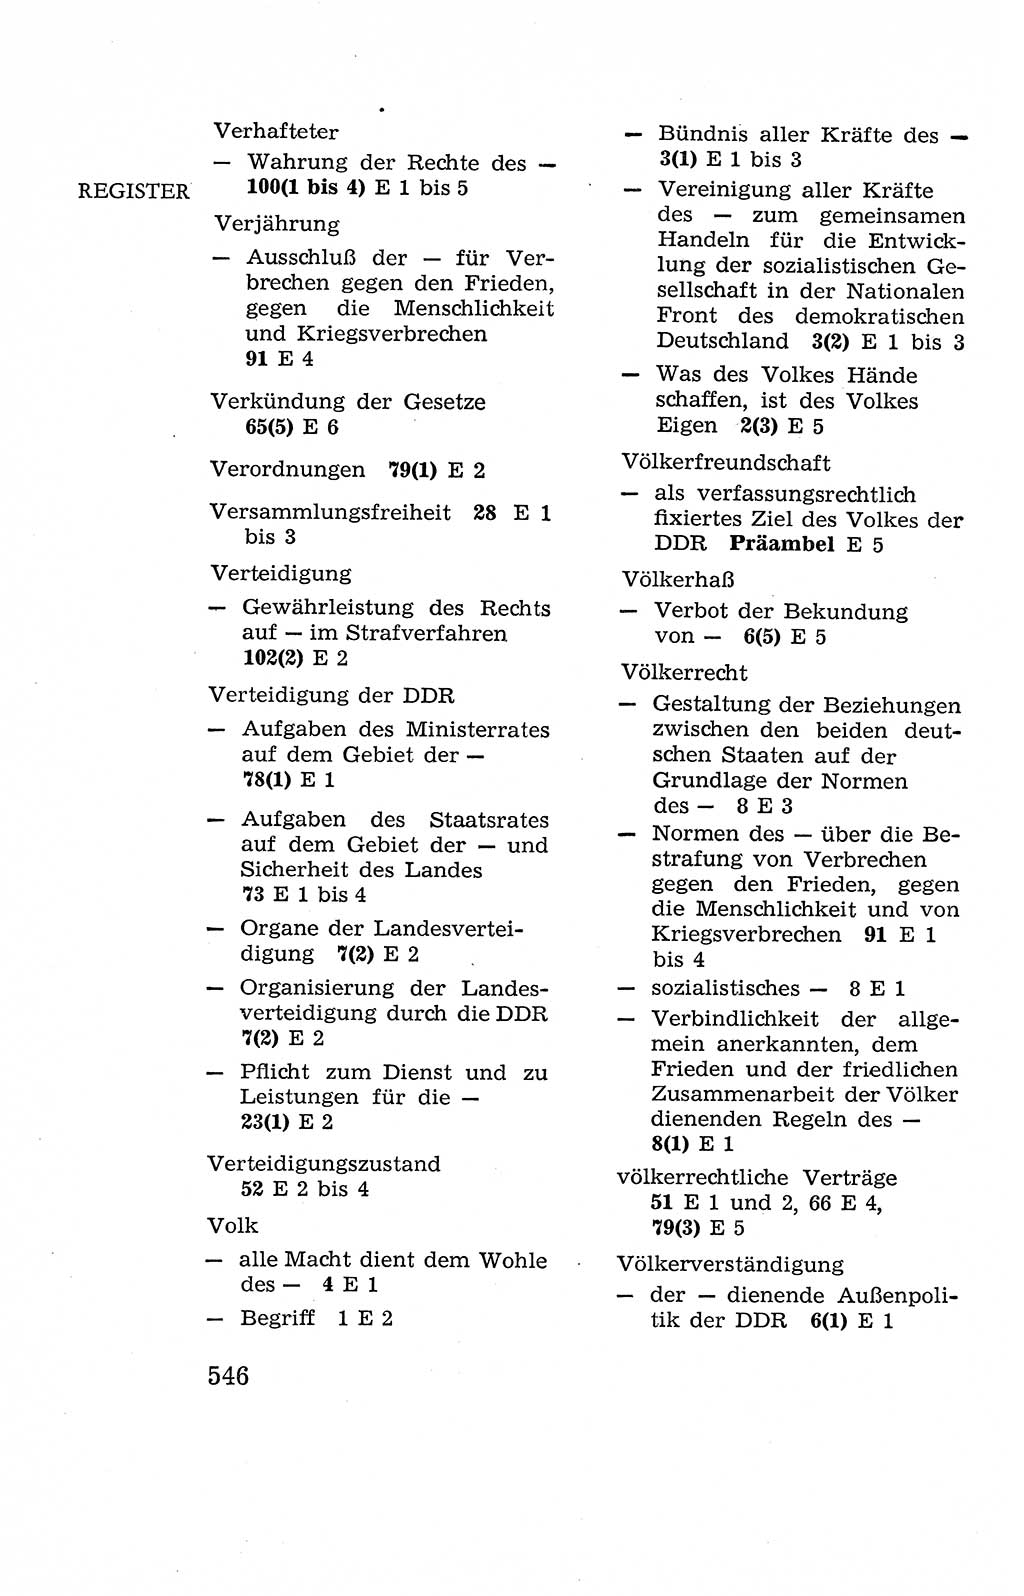 Verfassung der Deutschen Demokratischen Republik (DDR), Dokumente, Kommentar 1969, Band 2, Seite 546 (Verf. DDR Dok. Komm. 1969, Bd. 2, S. 546)